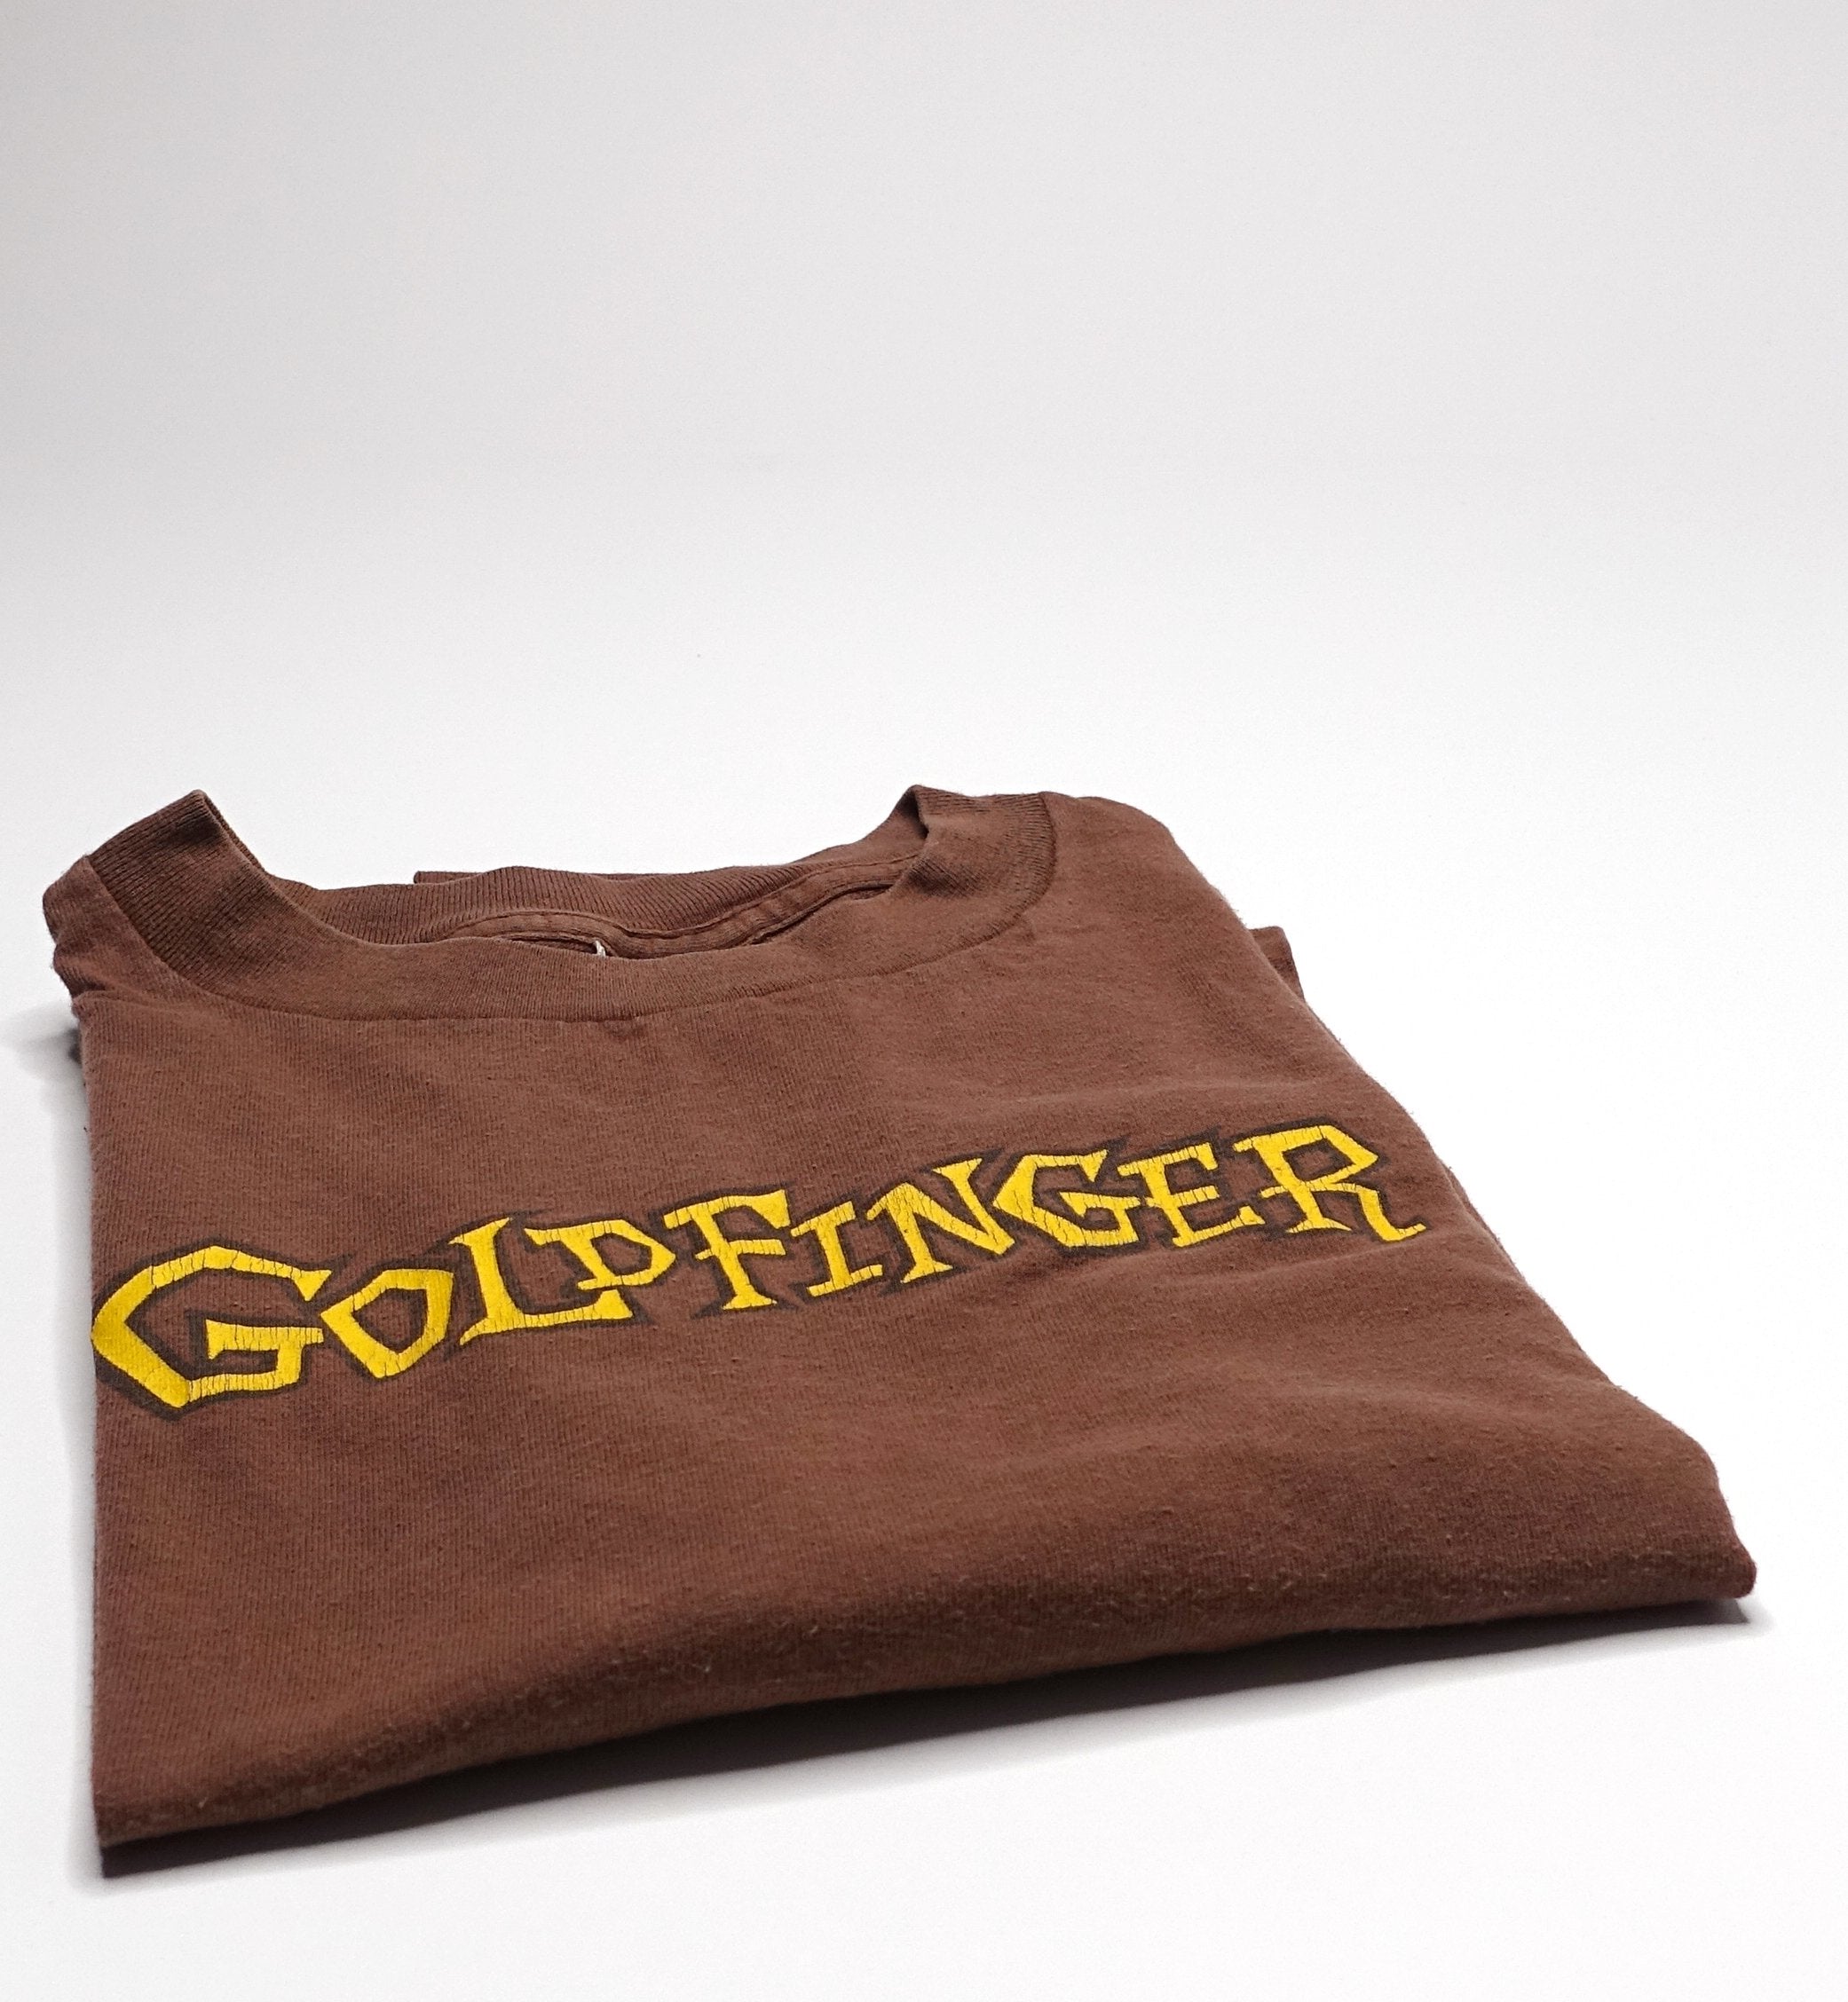 Goldfinger - S/T 1996 Tour Shirt (Brown) Size XL